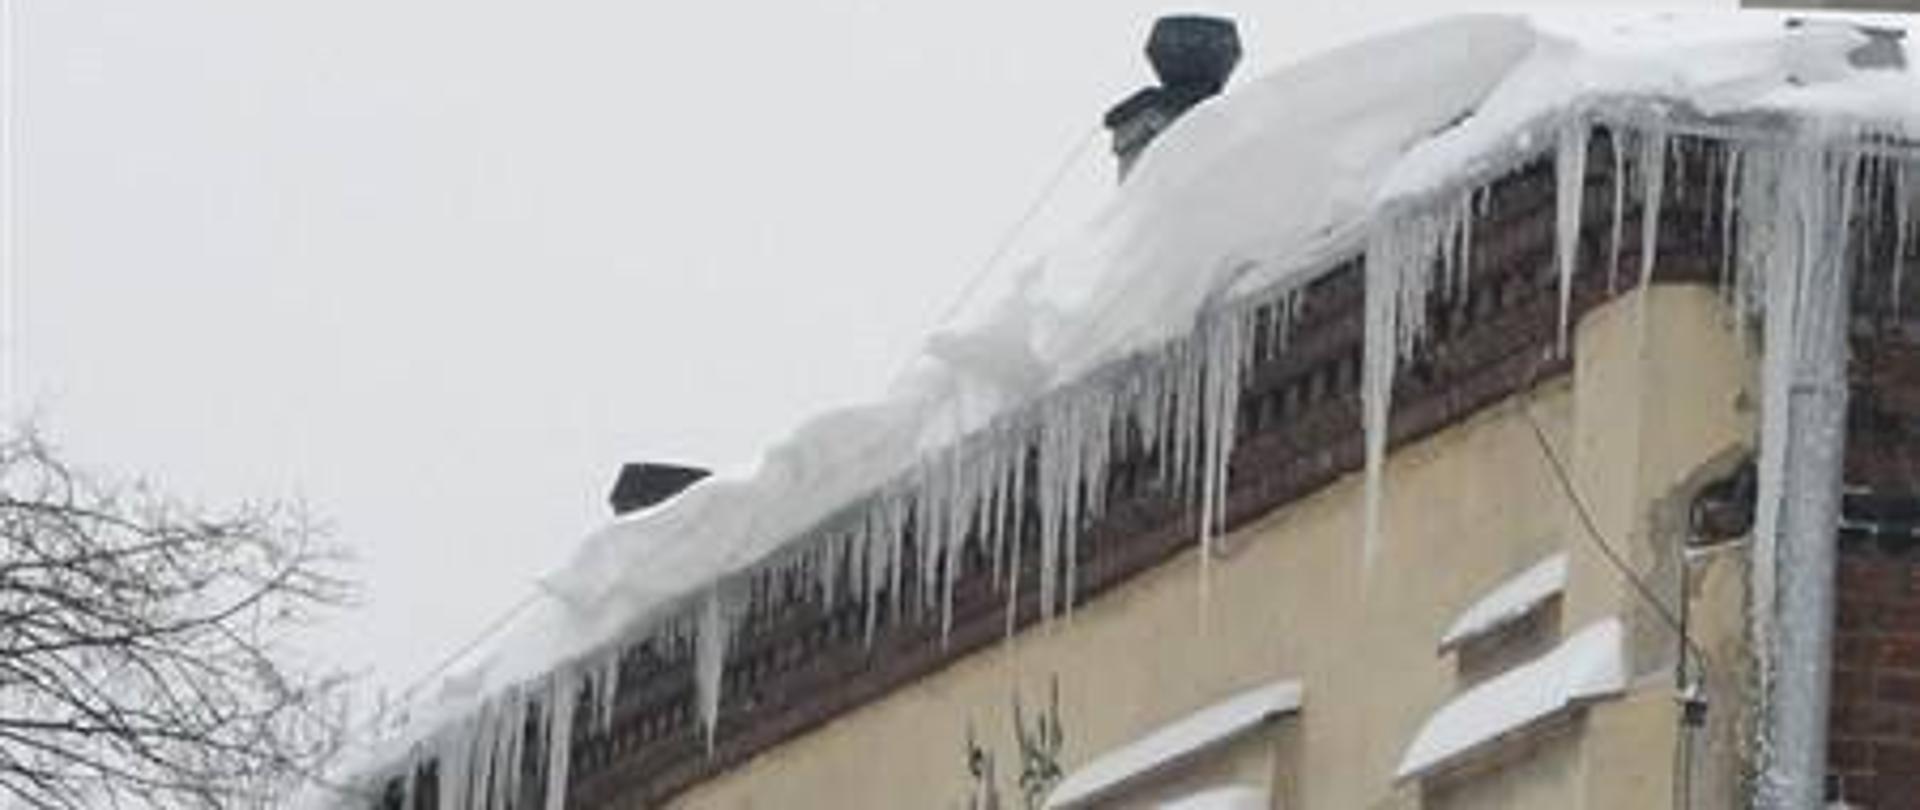 Nawisy śnieżne i lodowe na dachu budynku